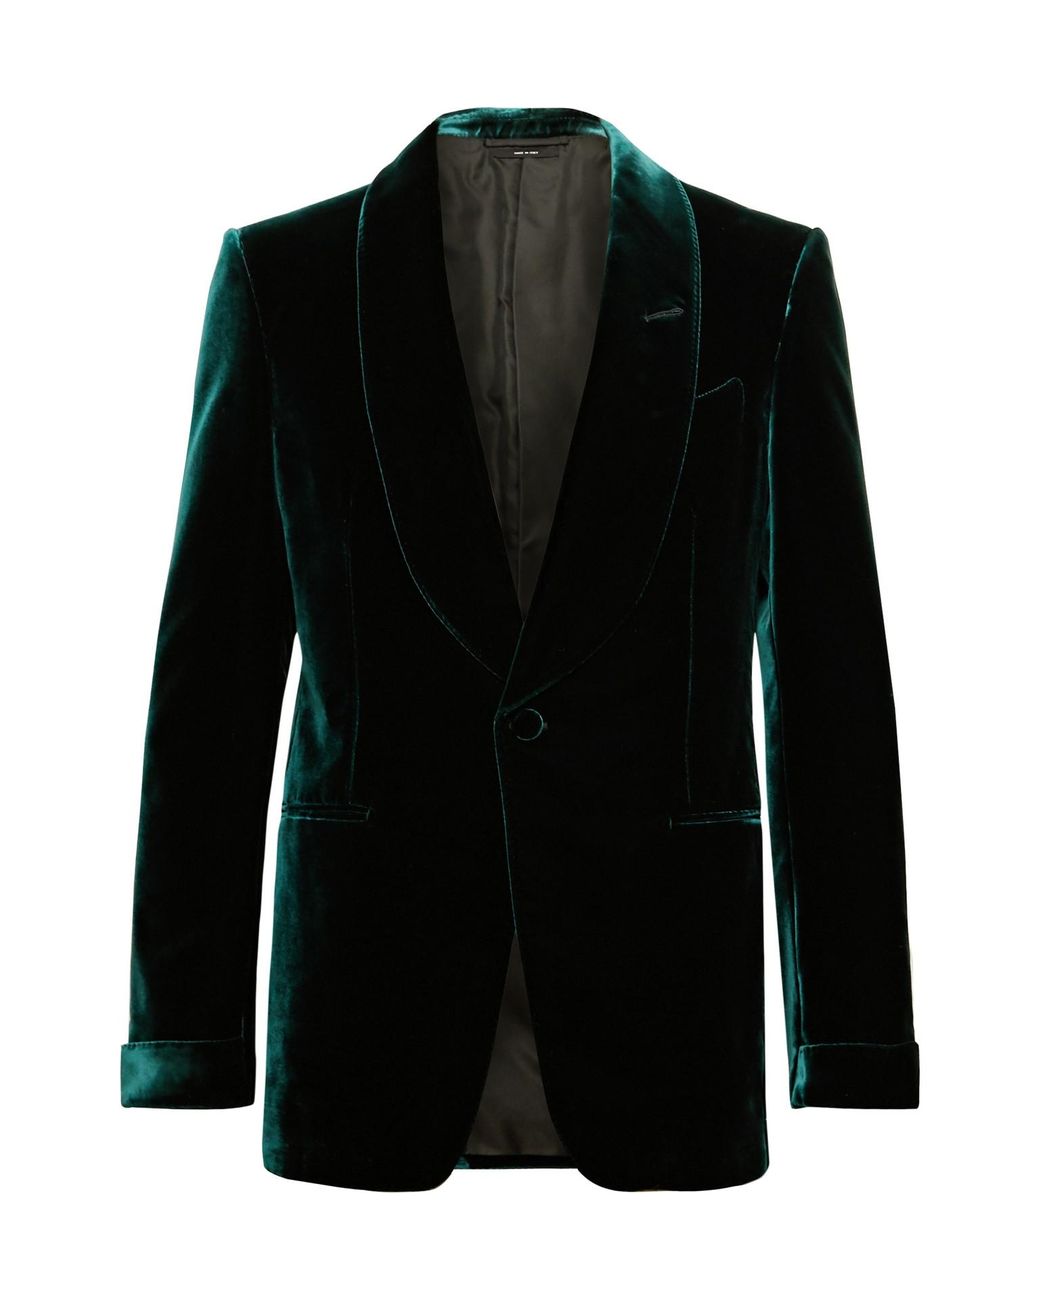 Tom Ford Emerald Slim-fit Shawl-collar Velvet Tuxedo Jacket in Green ...